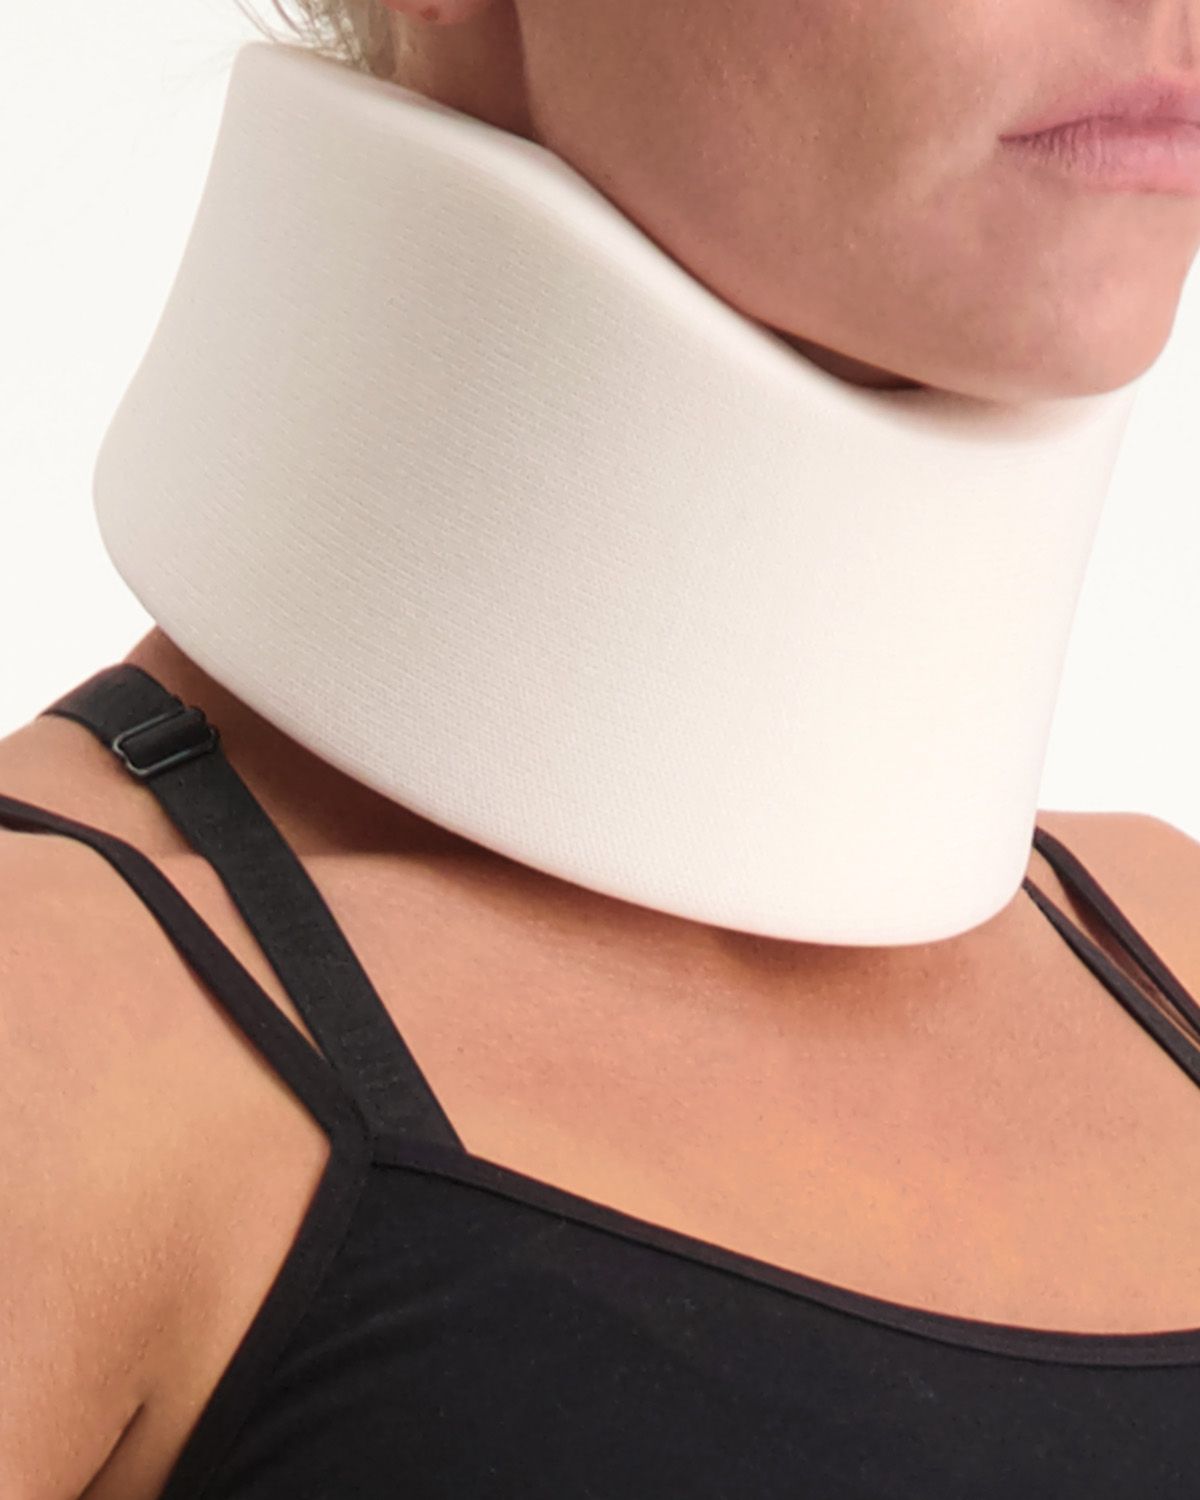 dunimed neck brace for sale